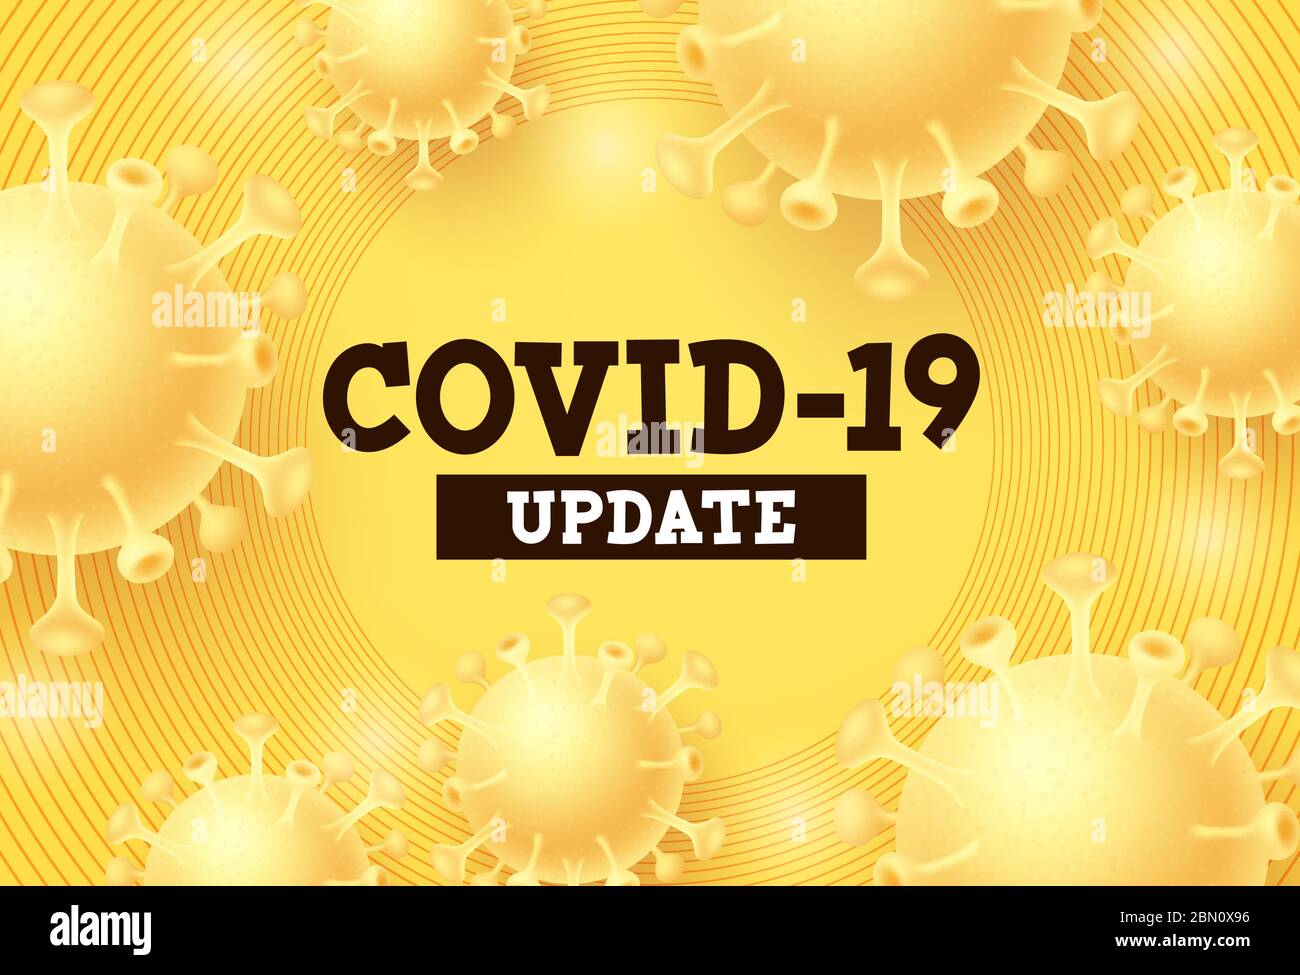 Covid-19 Update Vektor Hintergrund. Covid-19-Aktualisierungstext mit Corona-Virus im gelben Hintergrund für globale Pandemie-Aktualisierung. Vektorgrafik. Stock Vektor